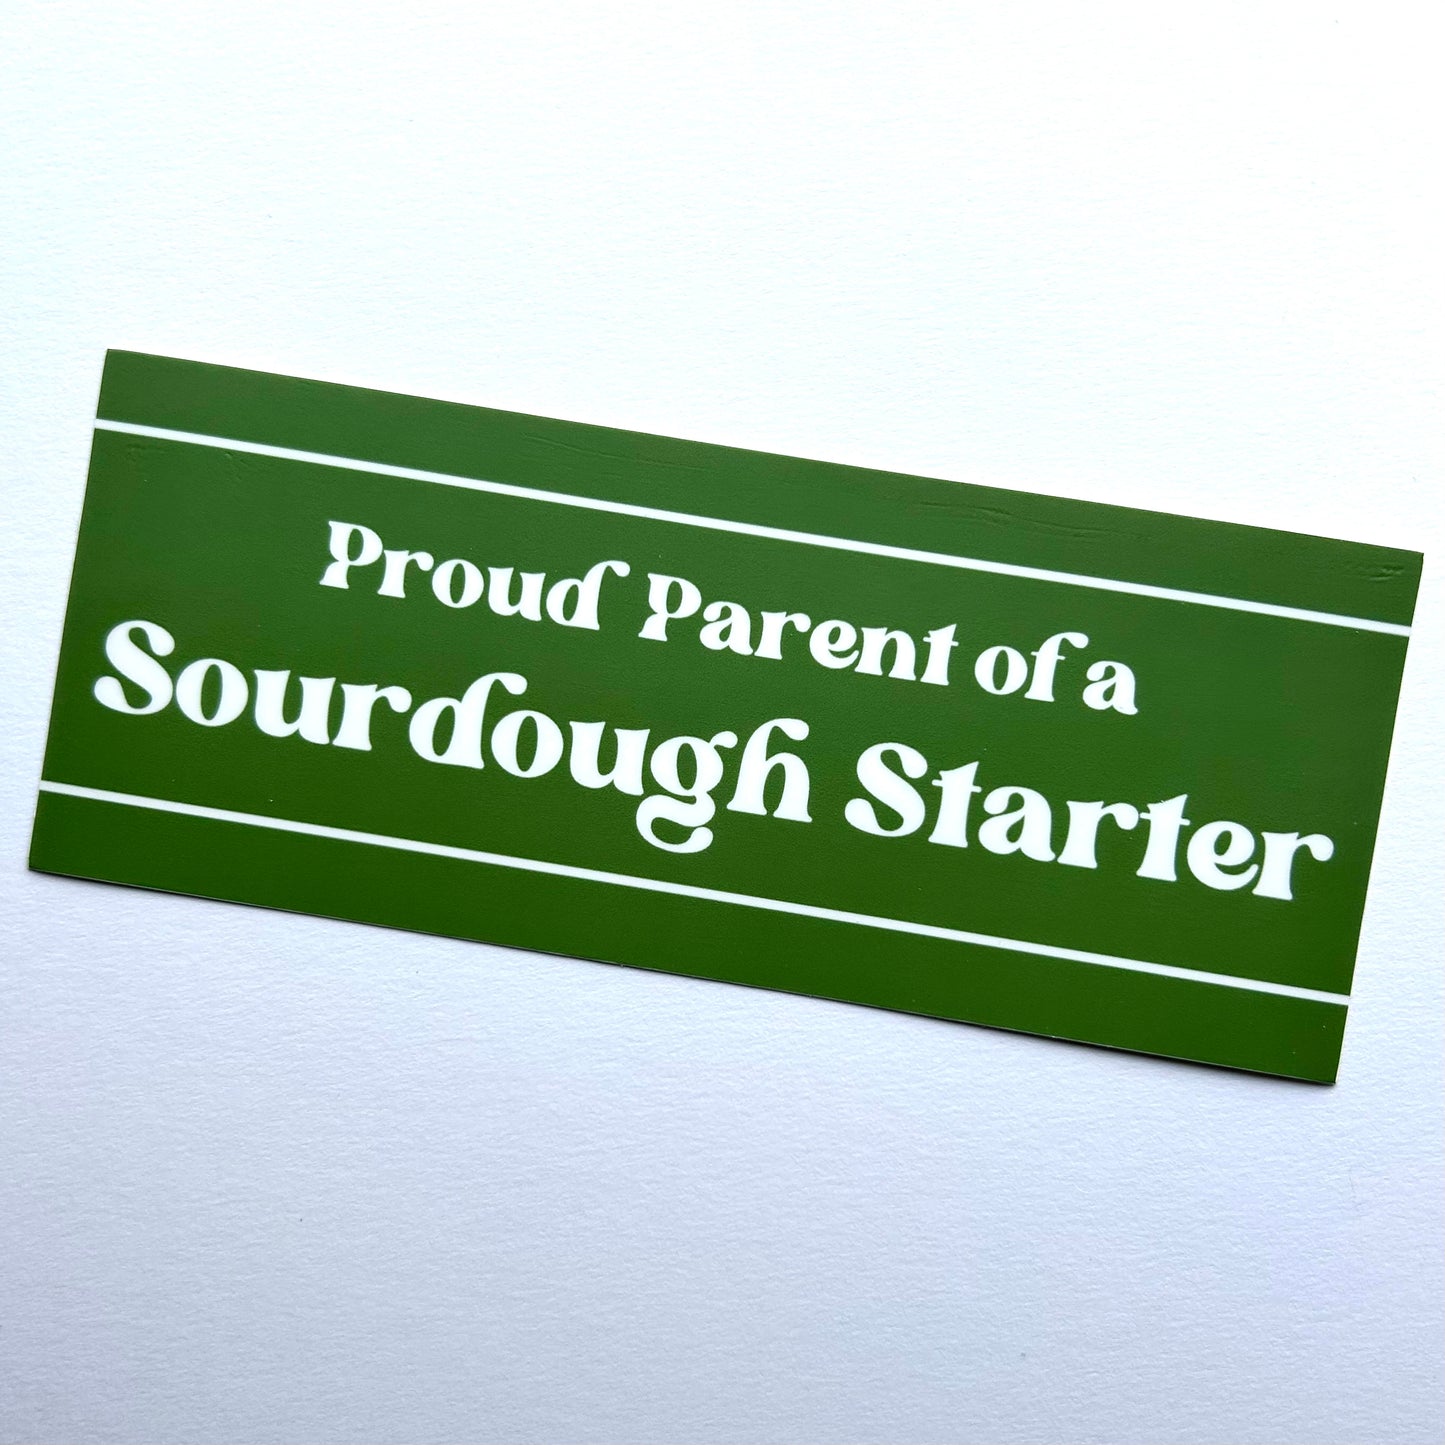 Proud Parent of a Sourdough Starter - Green